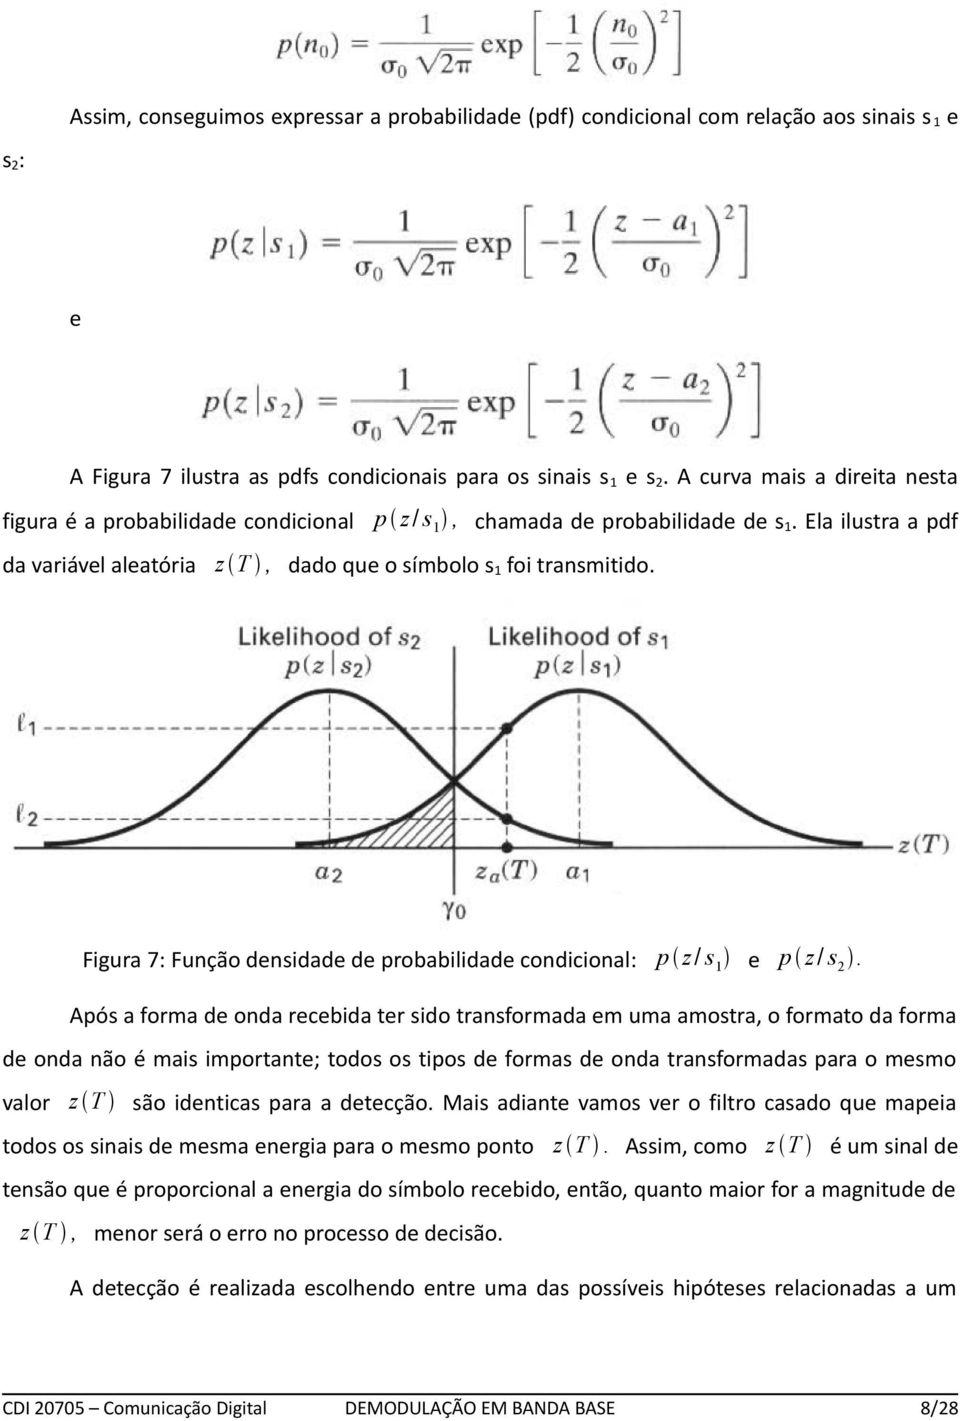 Figura 7: Função densidade de probabilidade condicional: p z / s e p z / s.